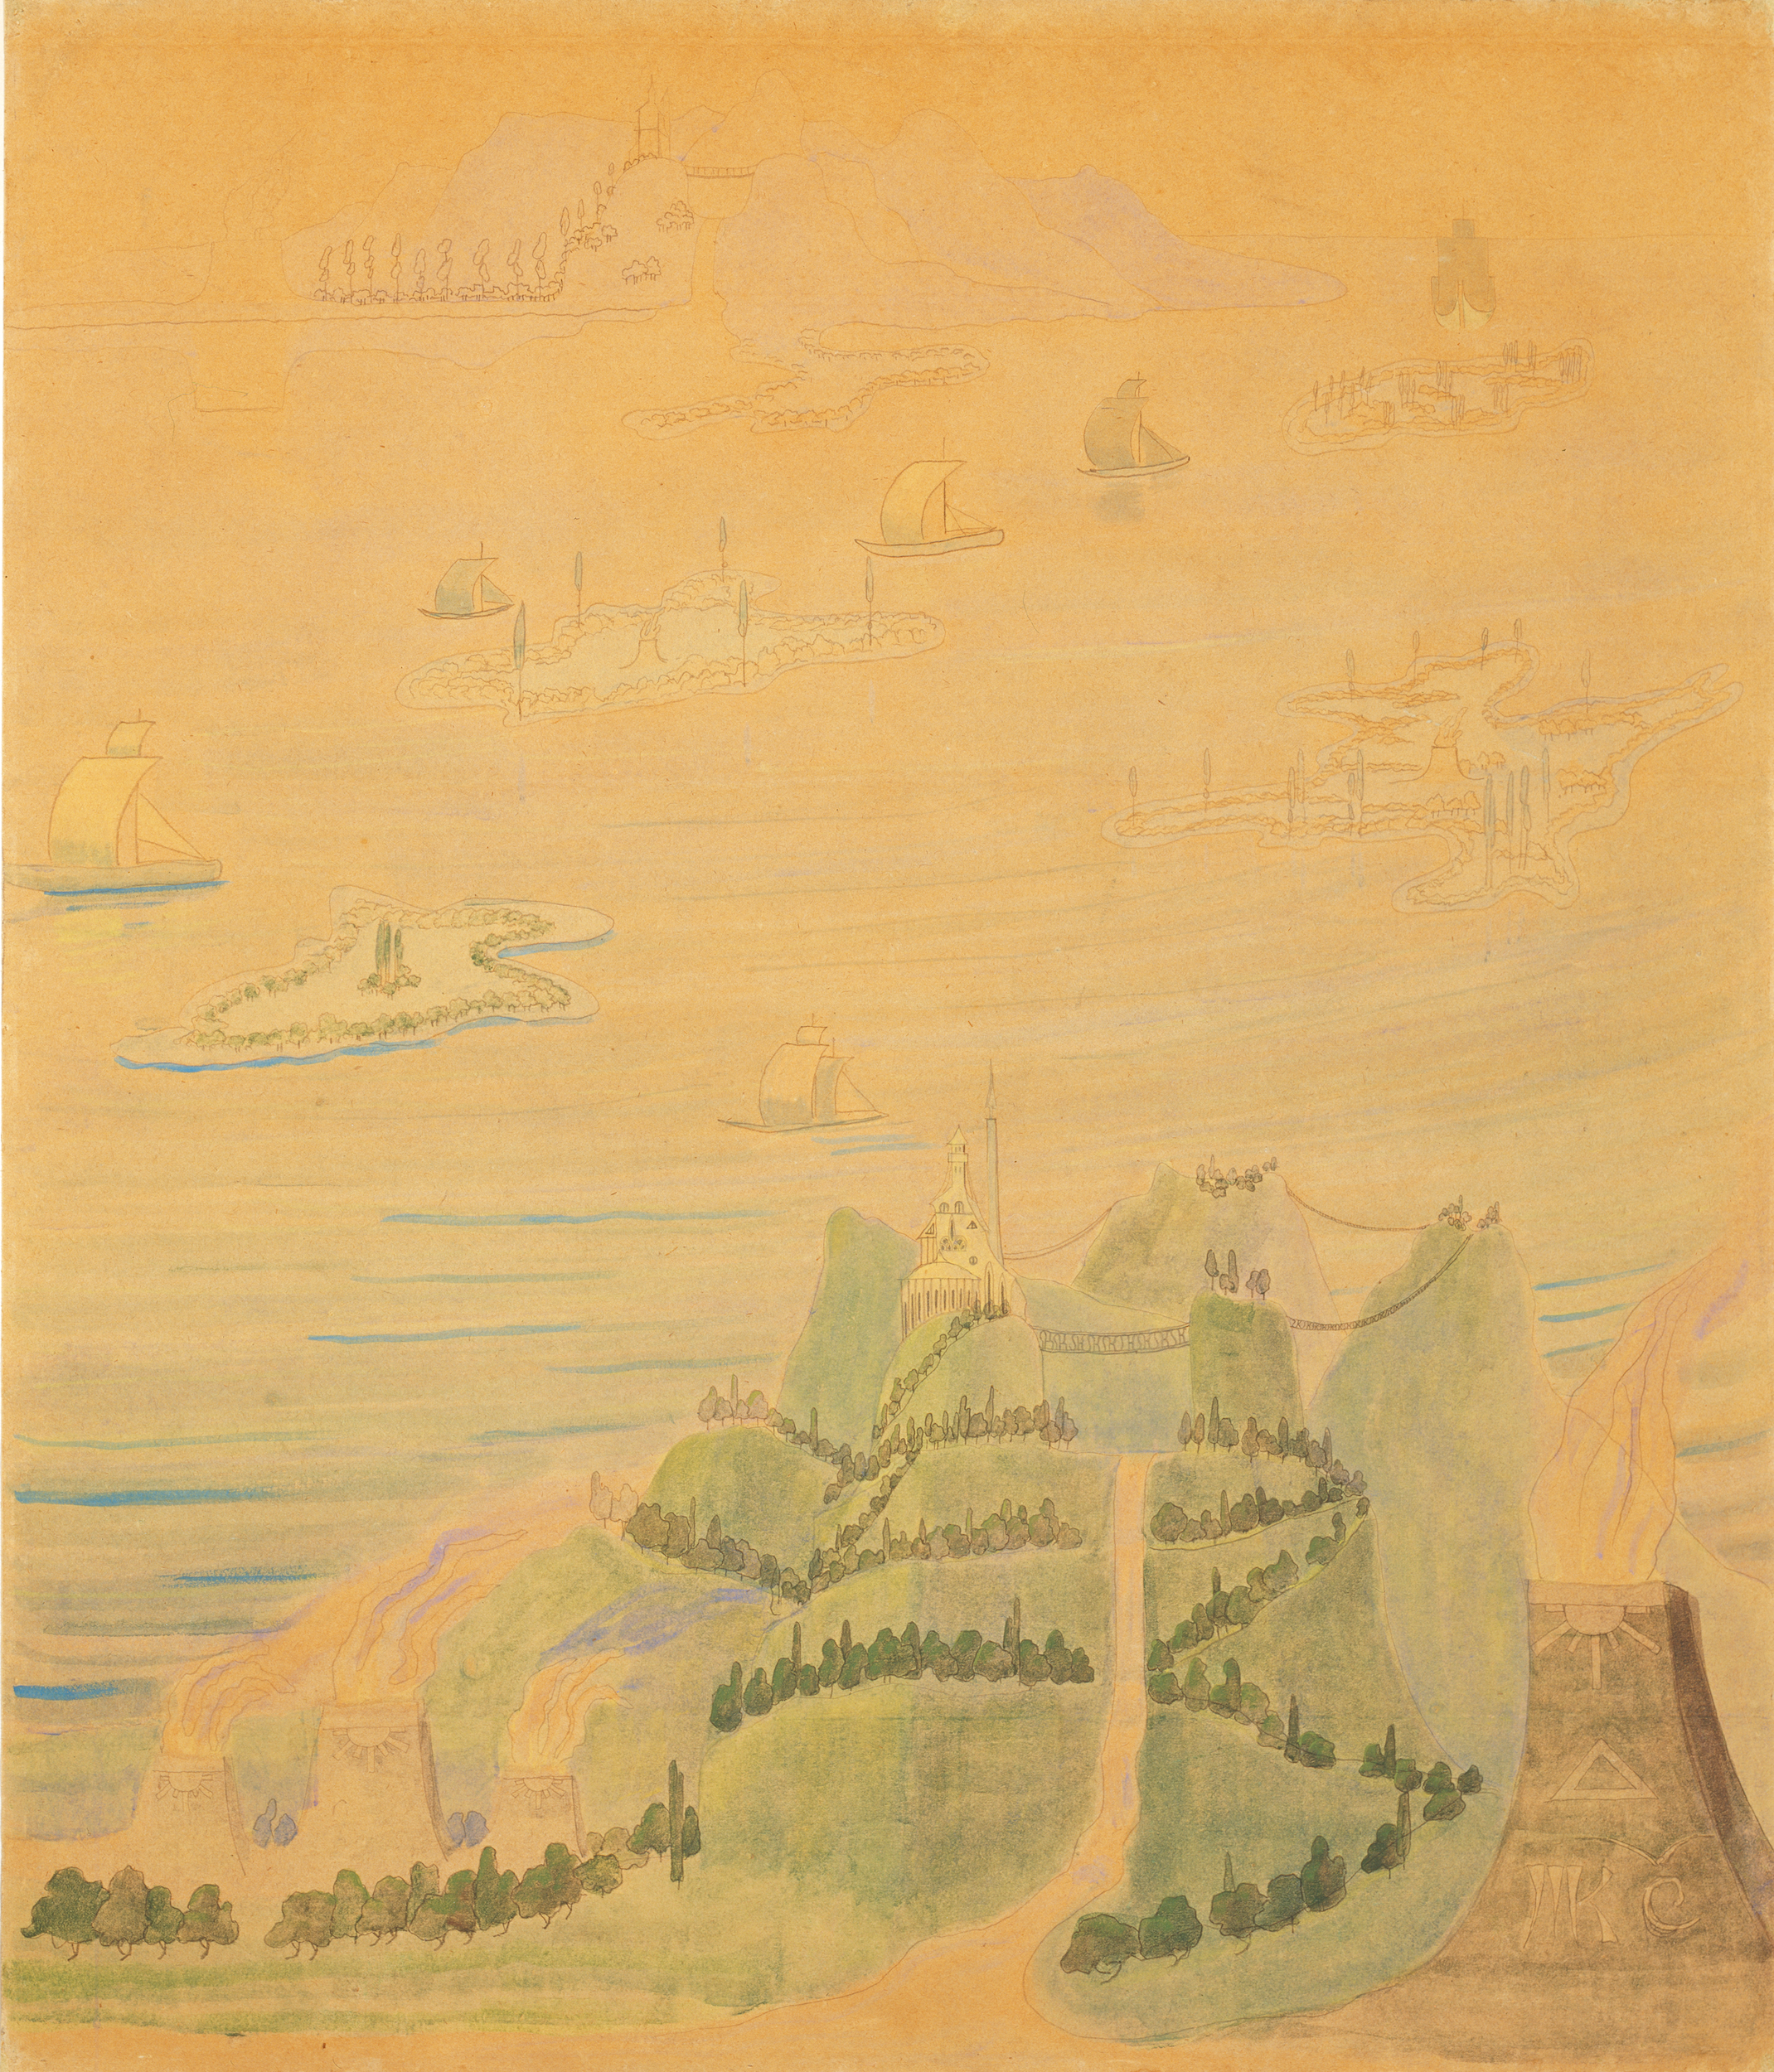 《第四奏鸣曲快板》(夏日奏鸣曲) by 米卡洛尤斯·康斯坦丁斯 乔里昂斯 - 1908 - 62 x 72.5 cm M.K.奇乌尔利翁尼斯国家艺术博物馆